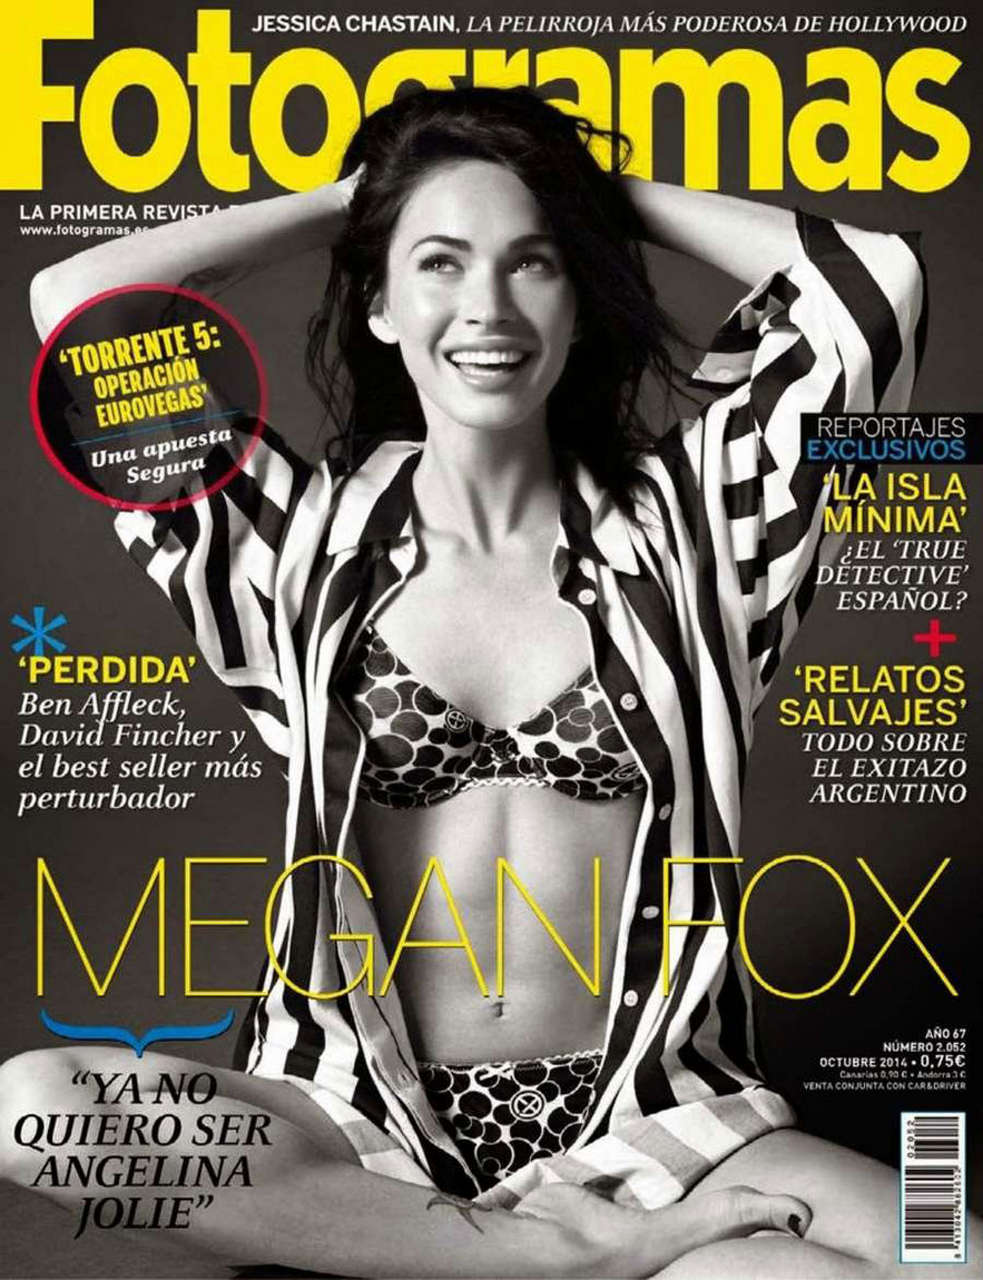 Magan Fox Fotogramas Magazine October 2014 Issue